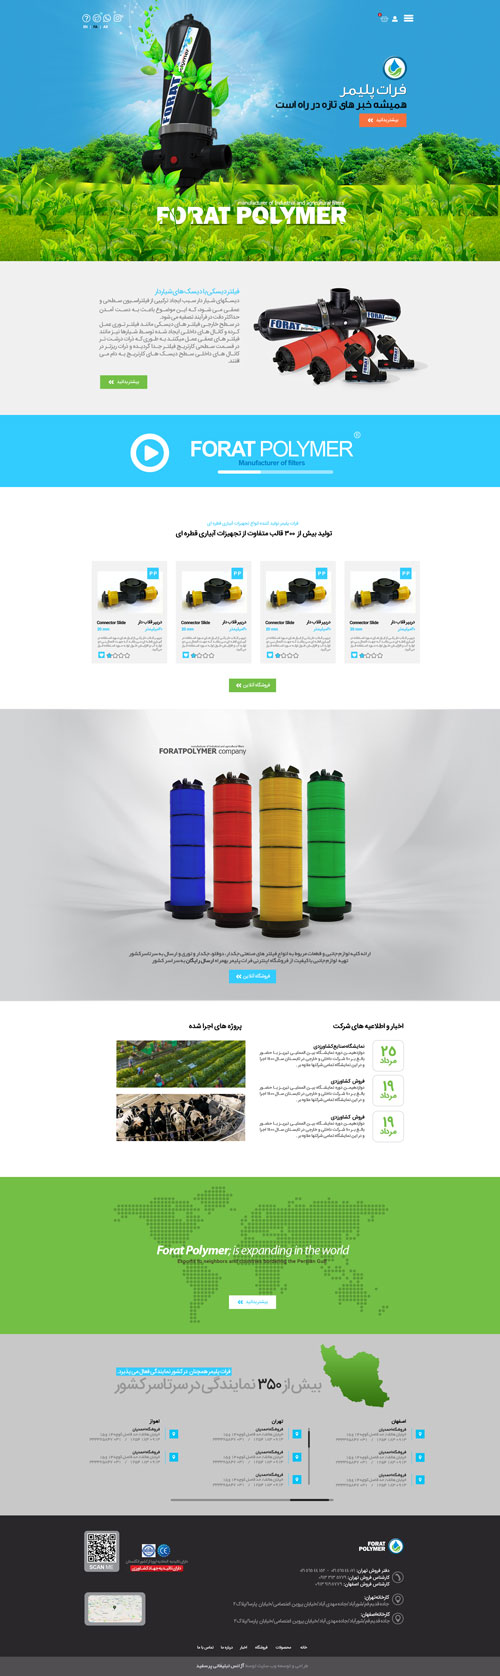 طراحی وب سایت شرکت تولیدی تجهیزات آبیاری فرات پلیمر